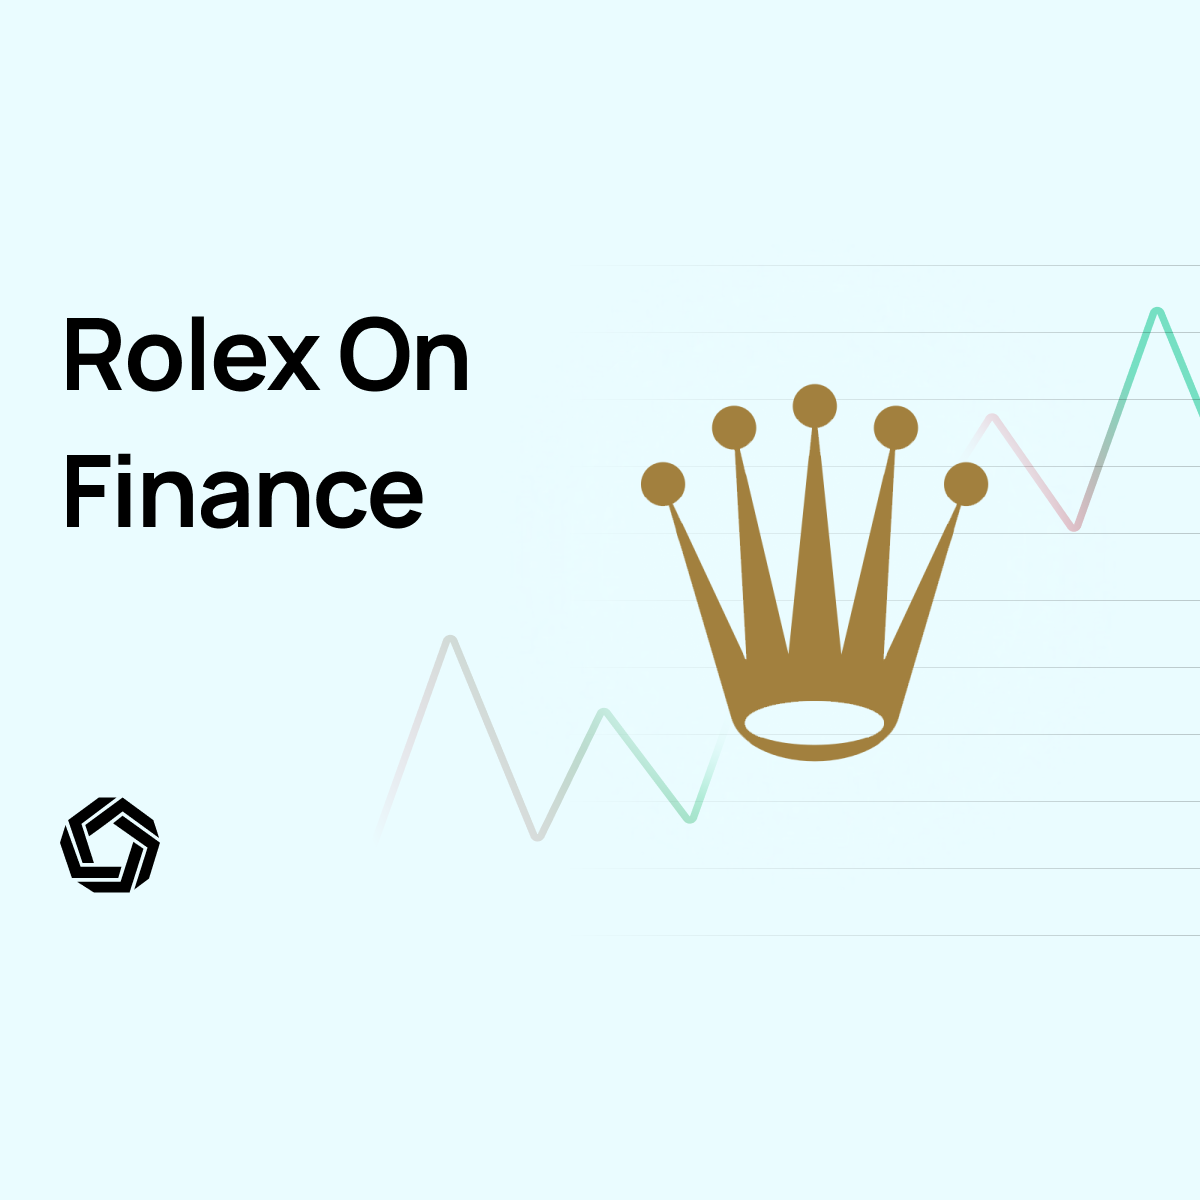 Rolex On Finance